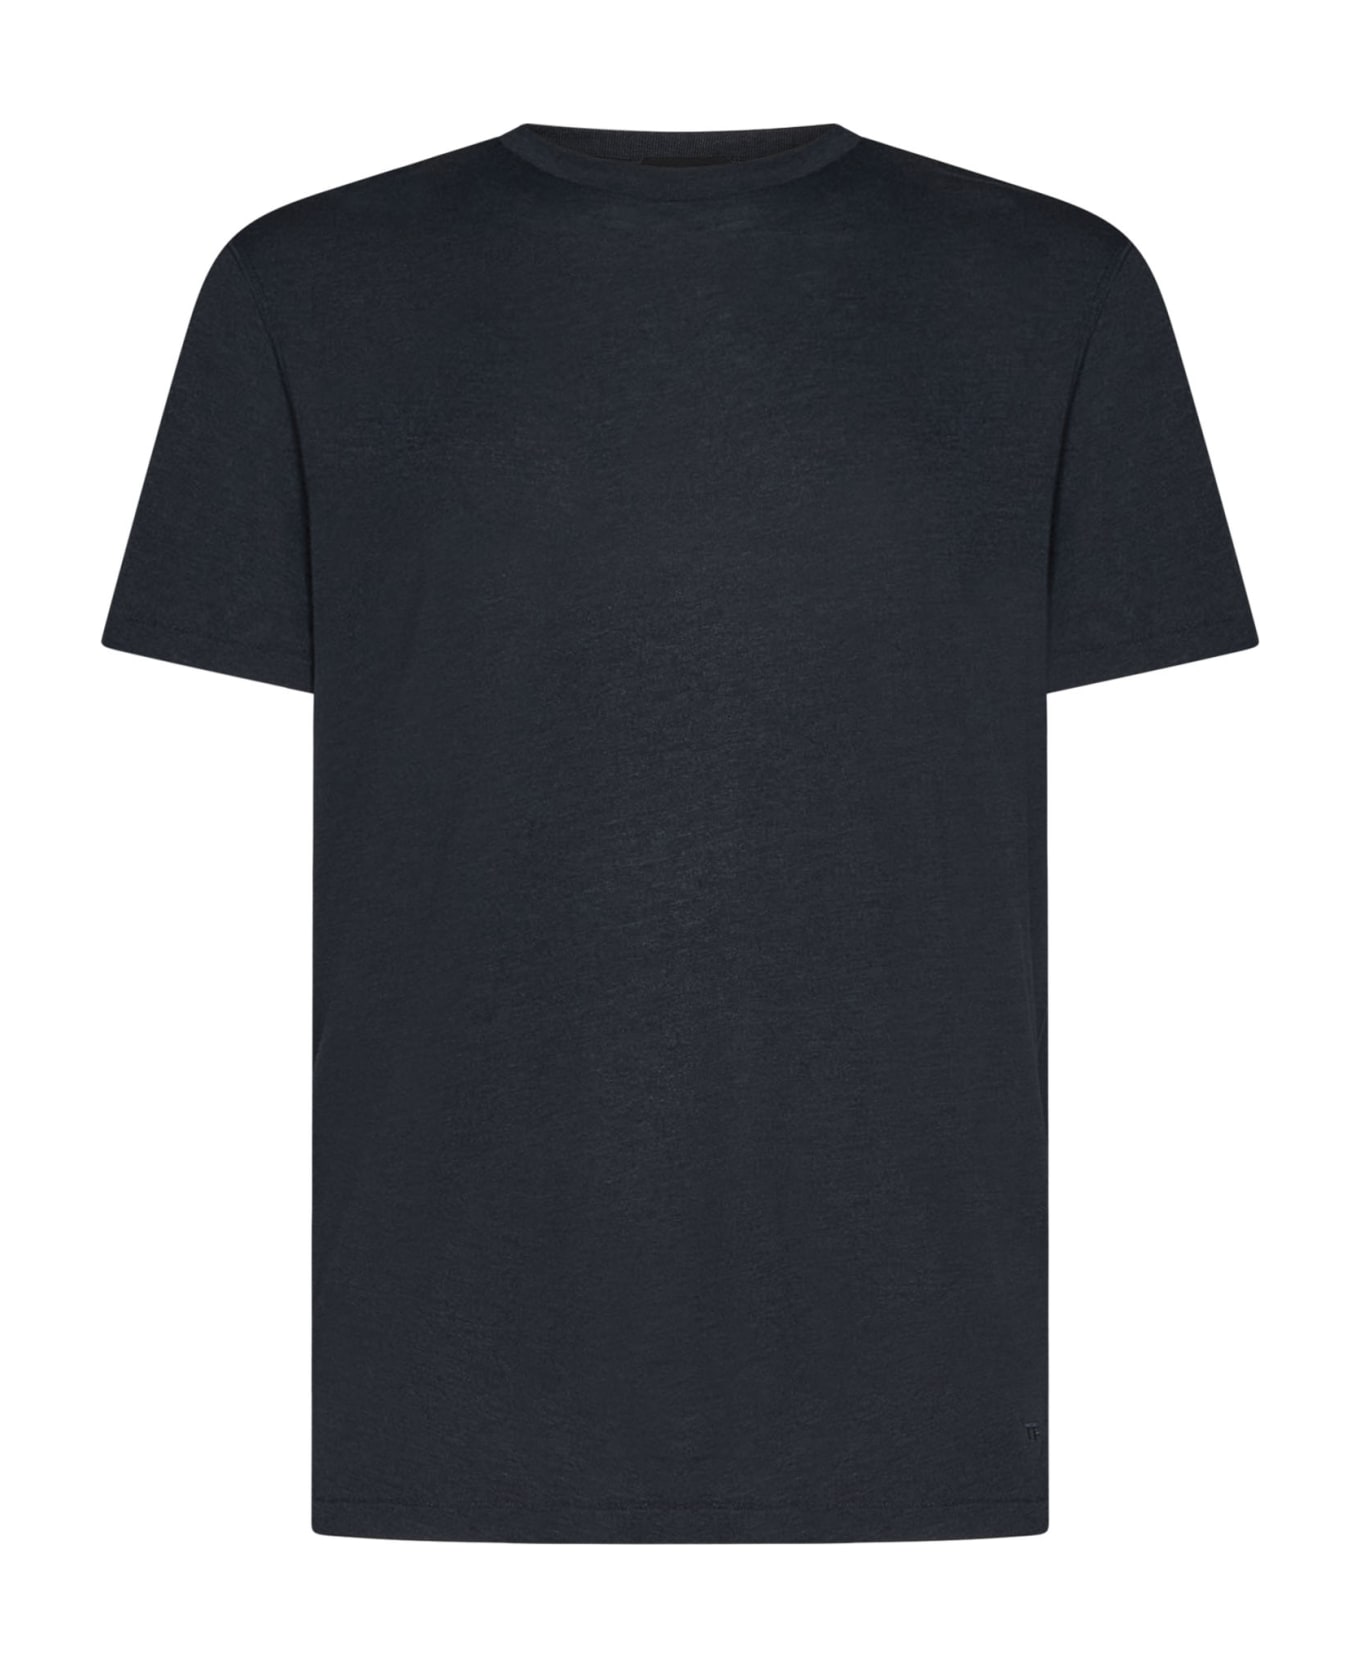 Tom Ford T-shirt - Black シャツ